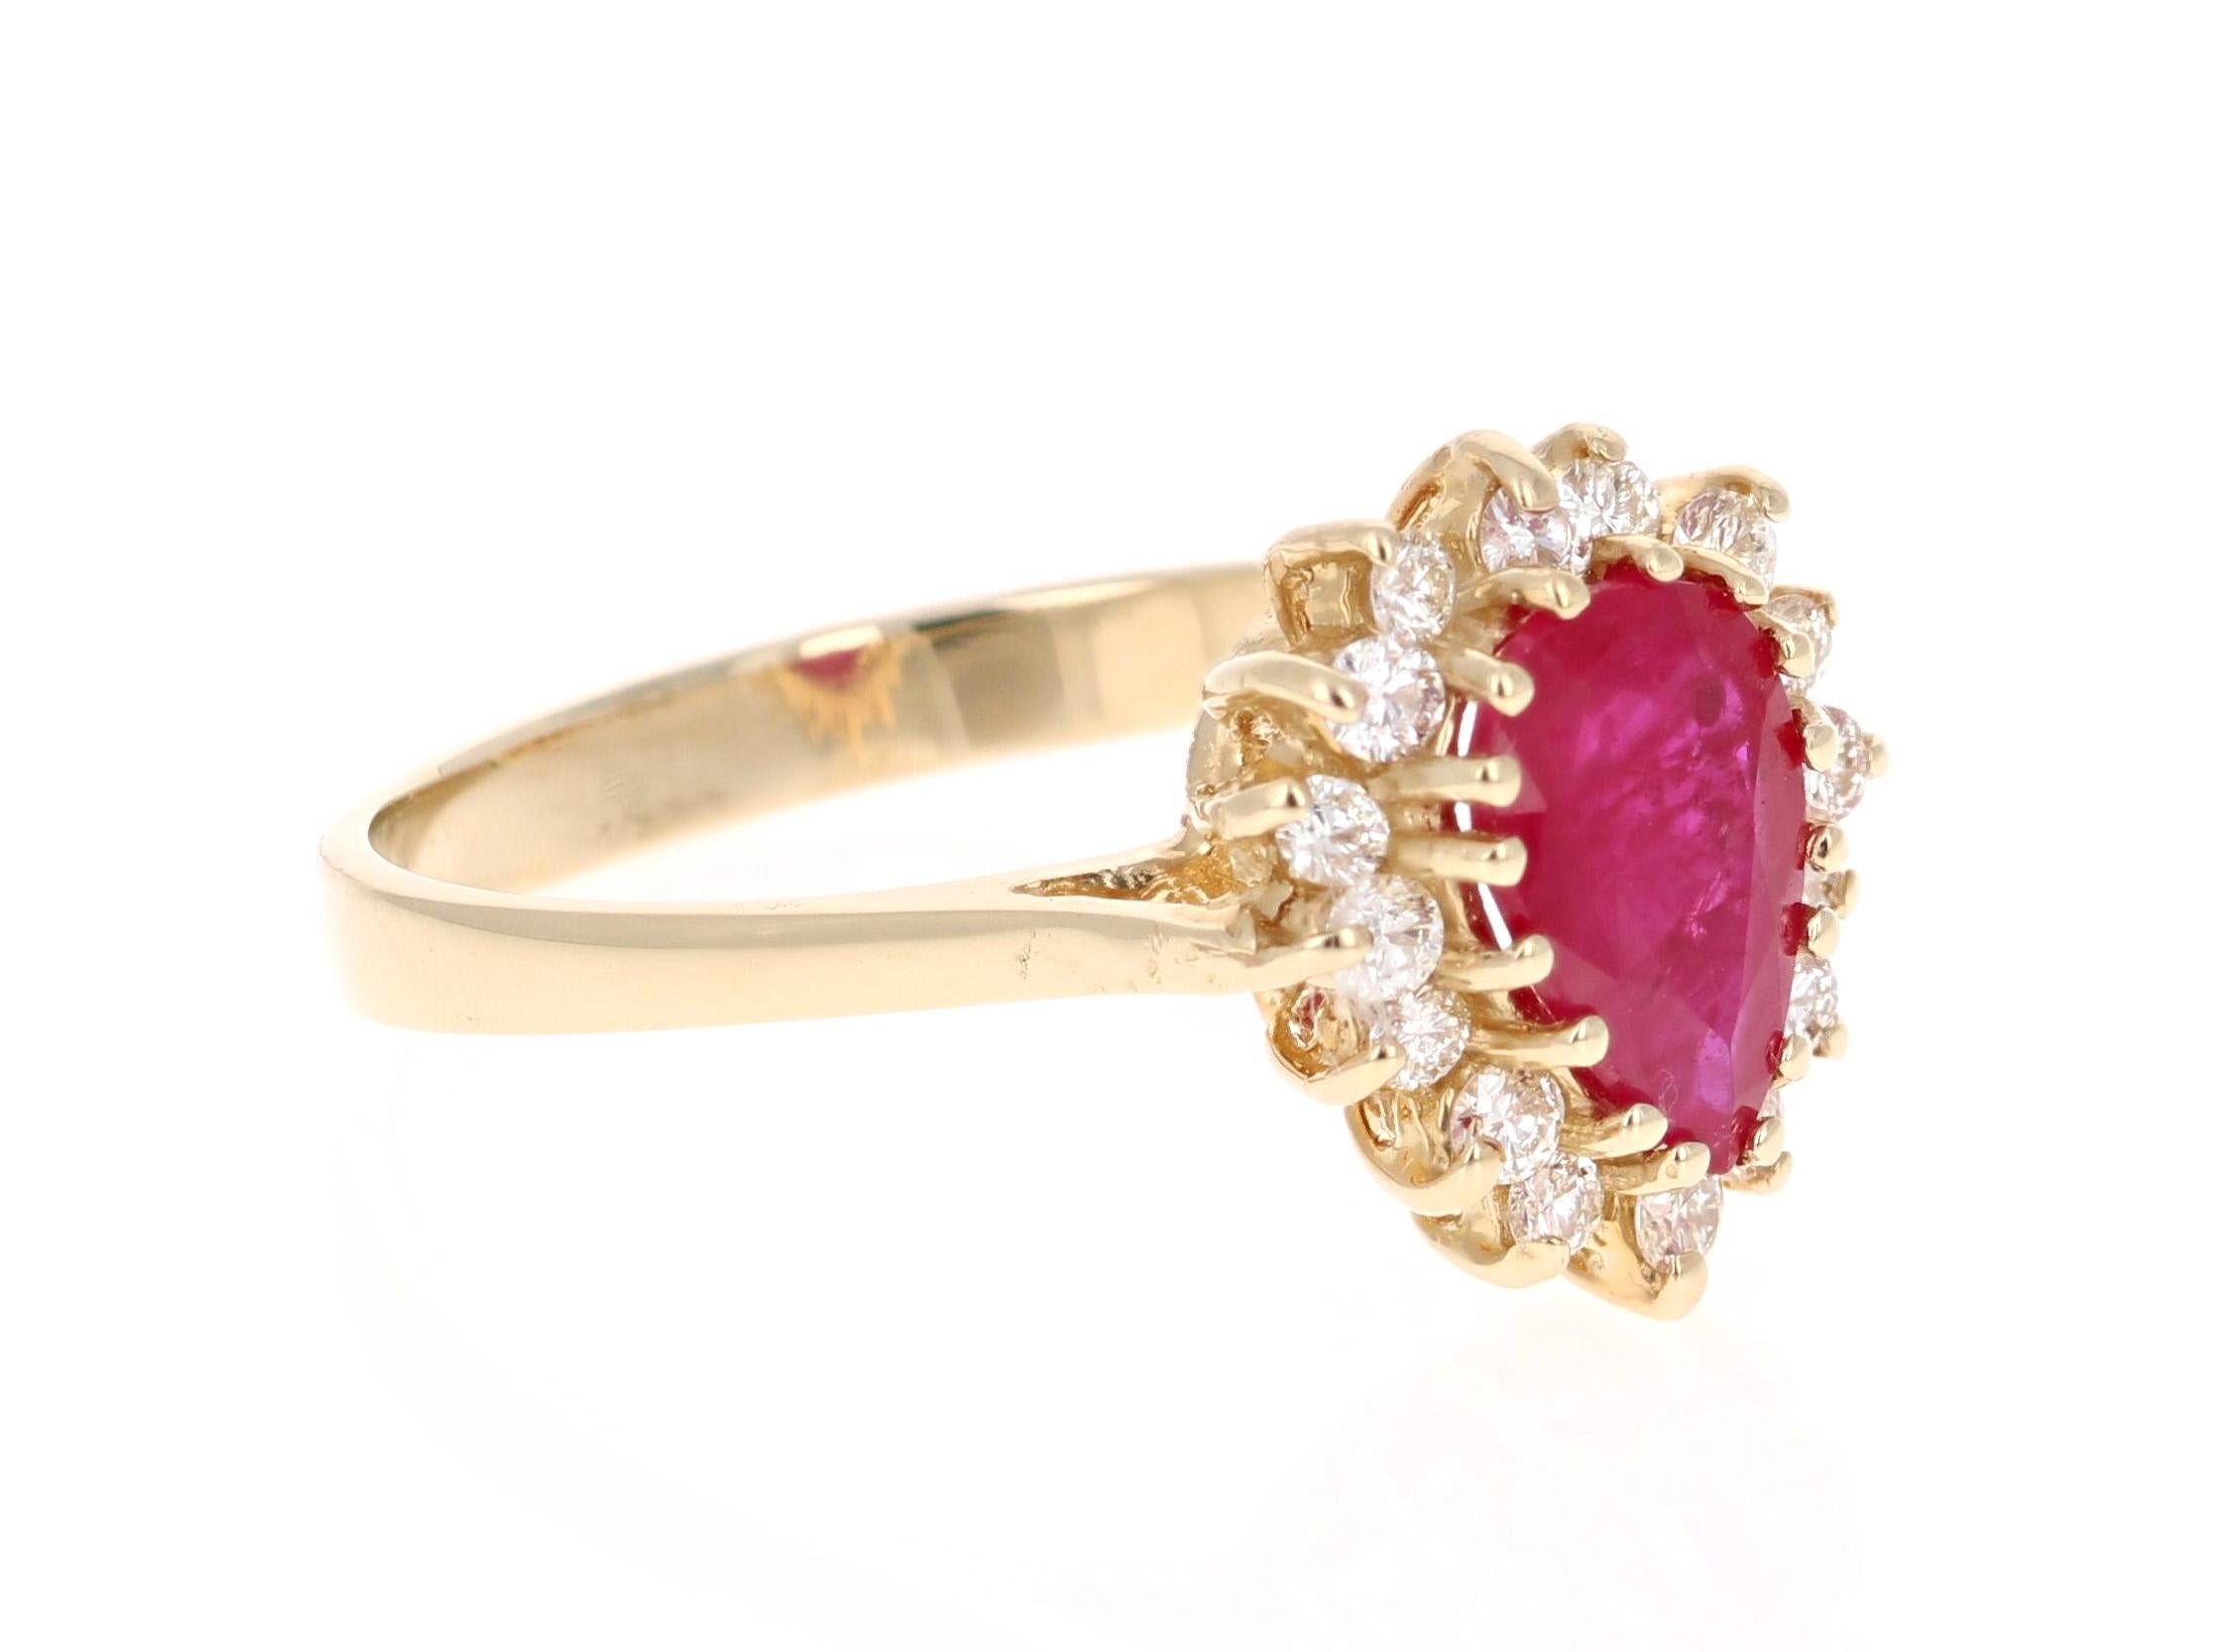 Einfach schöner Rubin-Diamant-Ring mit einem Rubin im Birnenschliff von 1,19 Karat, der von 16 Diamanten im Rundschliff mit einem Gewicht von 0,26 Karat umgeben ist. Das Gesamtkaratgewicht des Rings beträgt 1,45 Karat. Die Reinheit und Farbe der